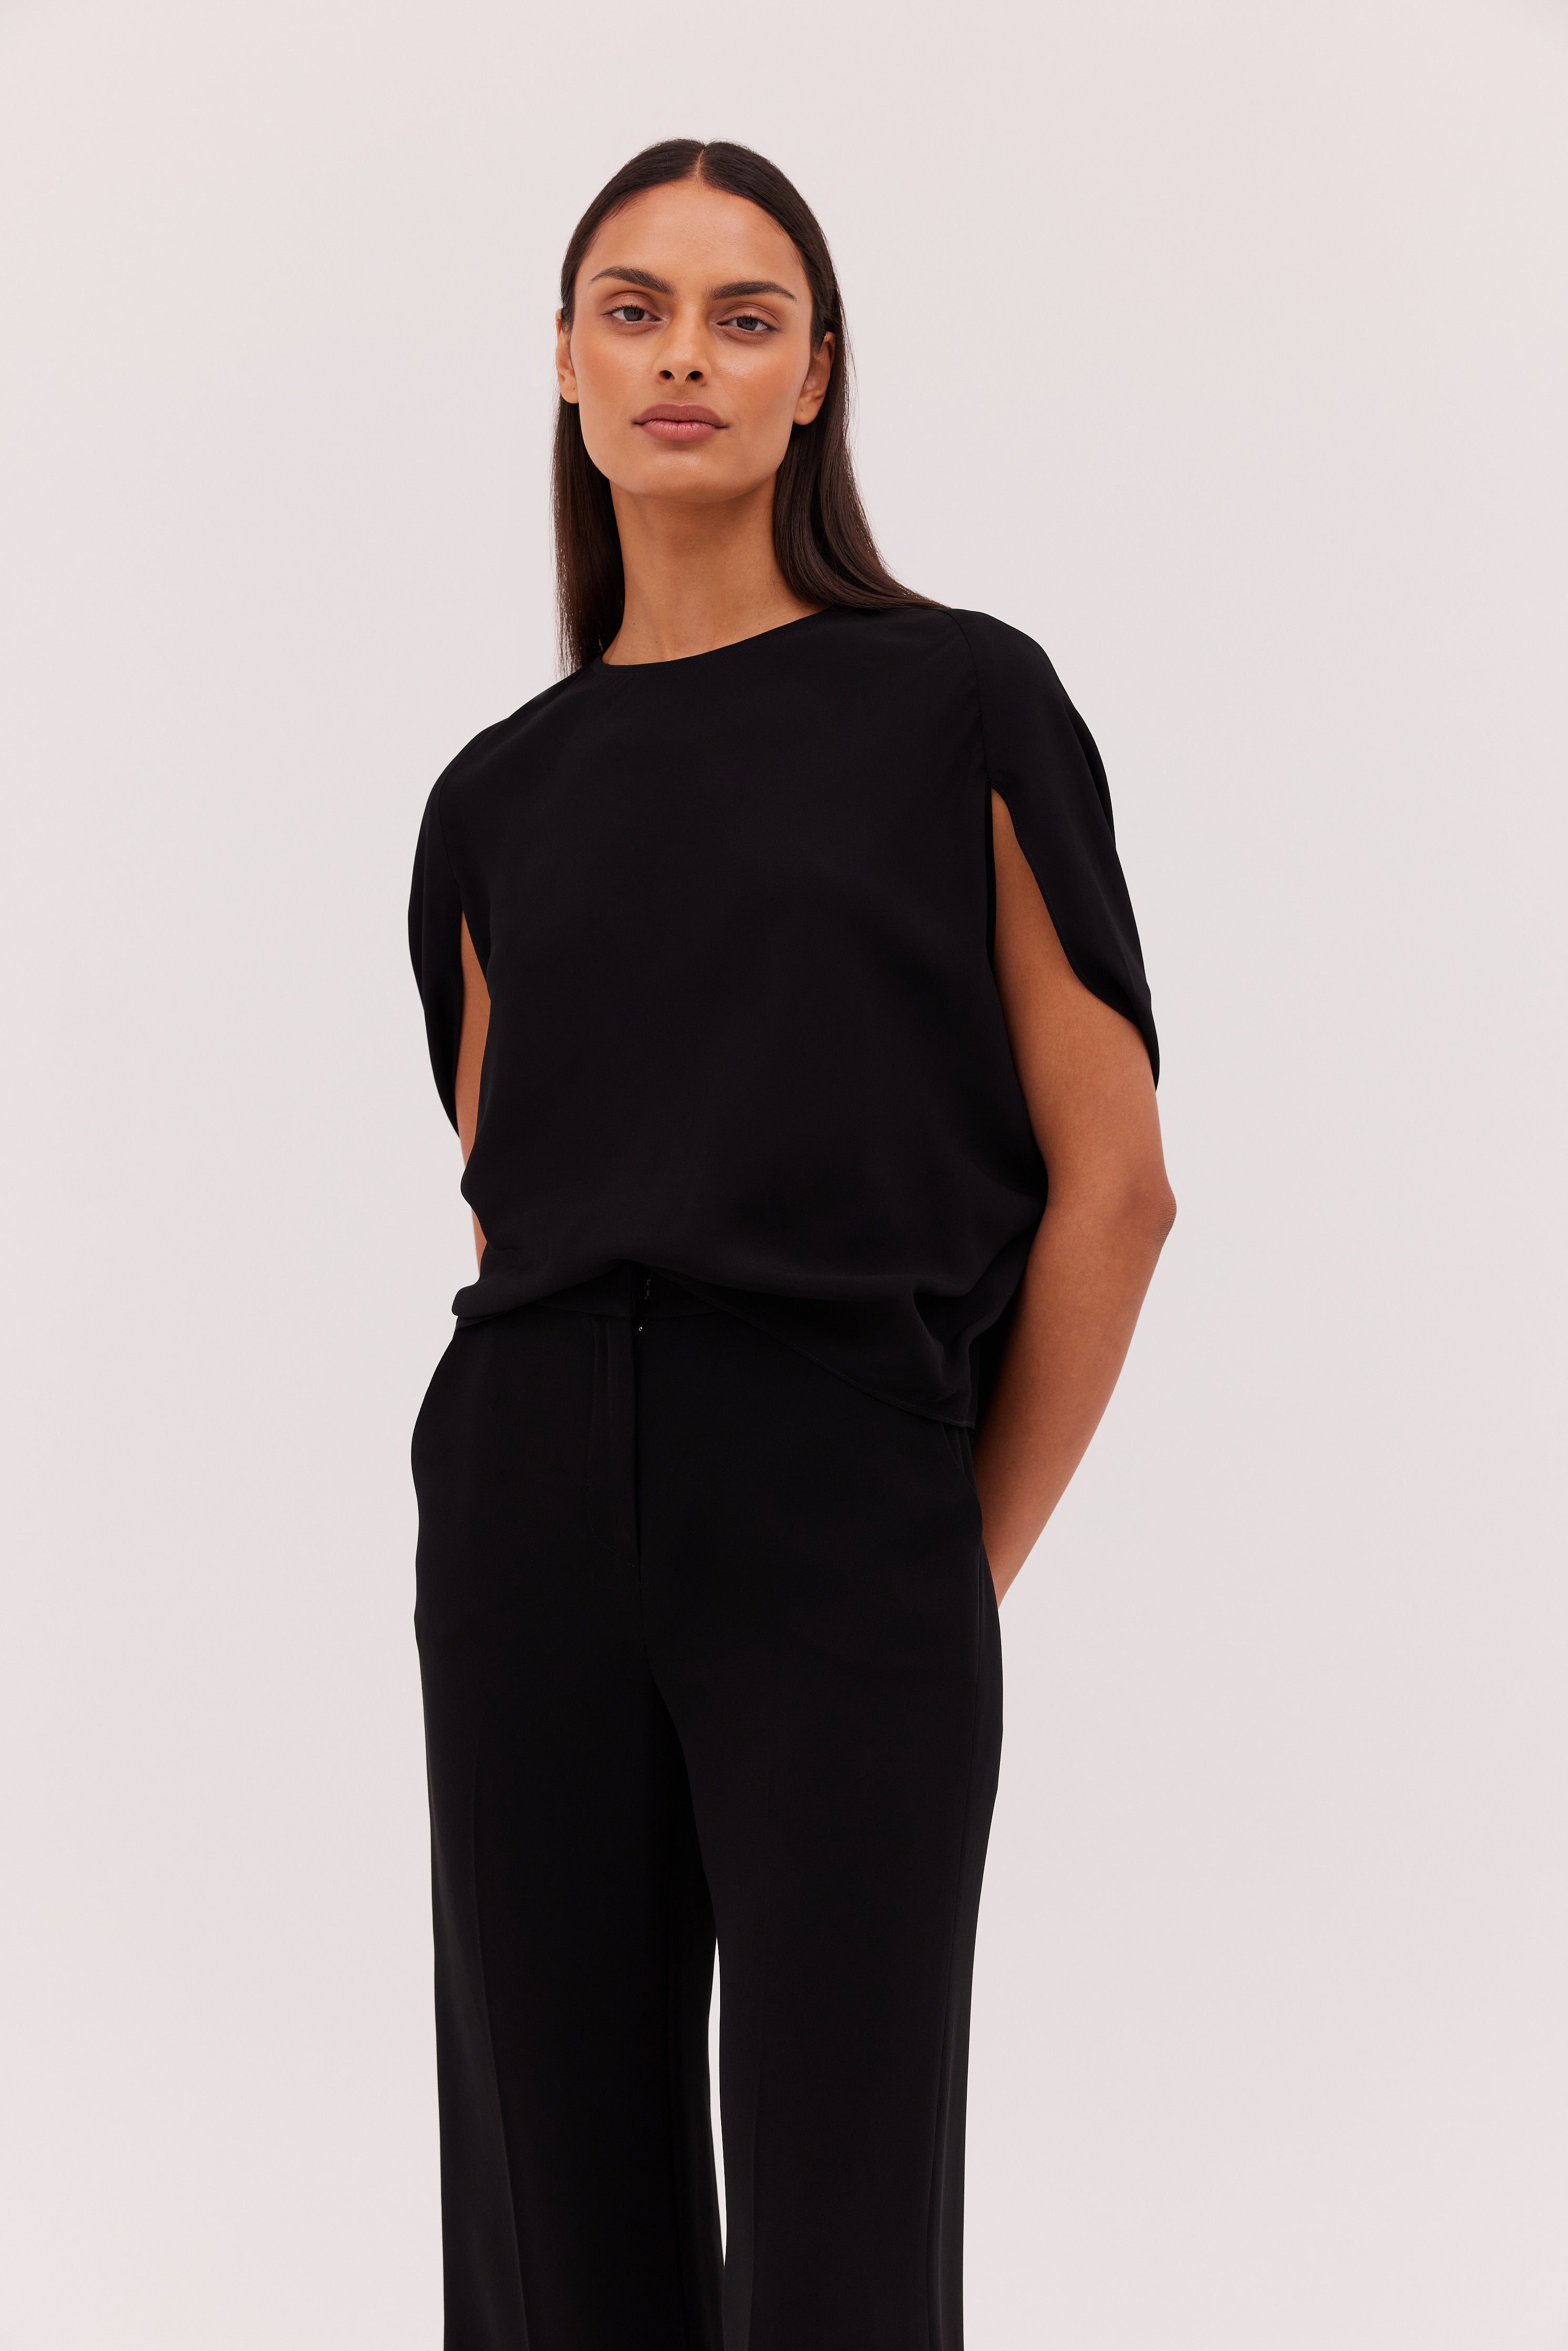 Modern Workwear – Bianca Spender